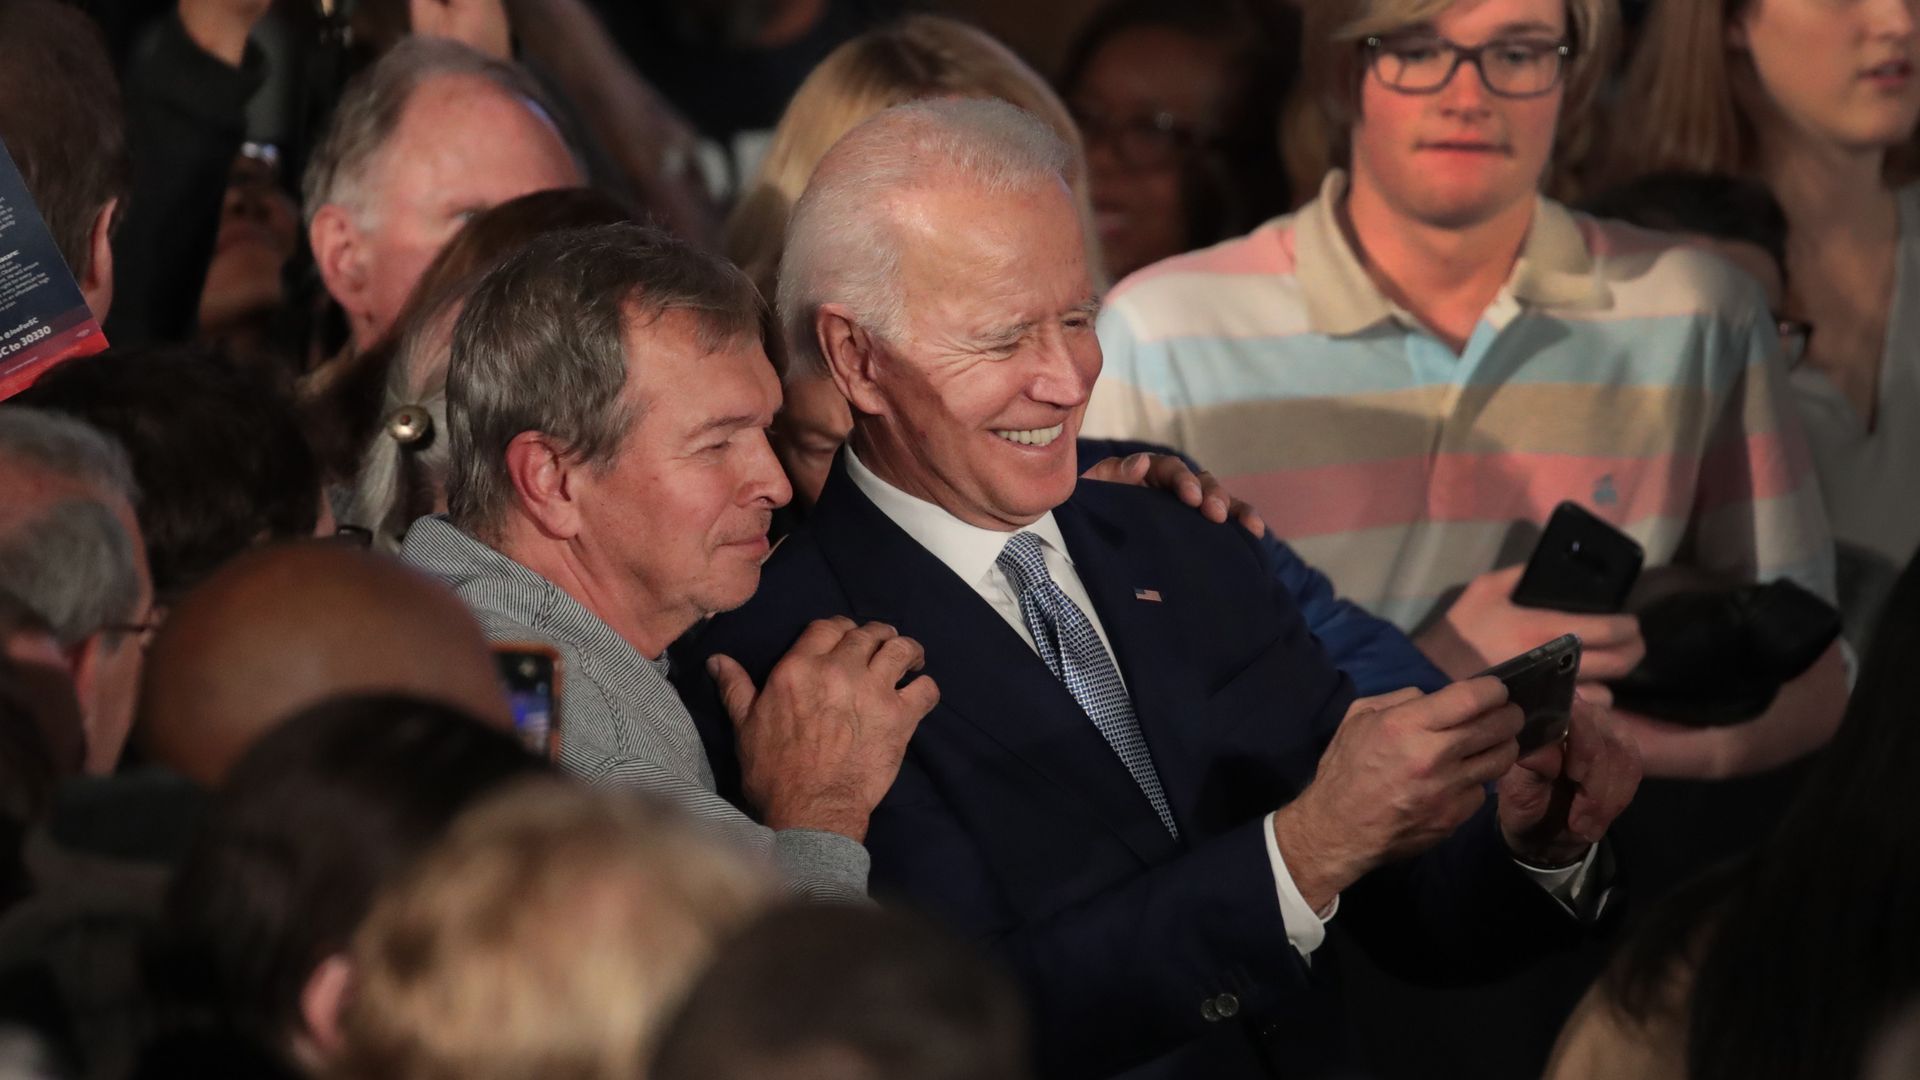 Joe Biden taking a selfie